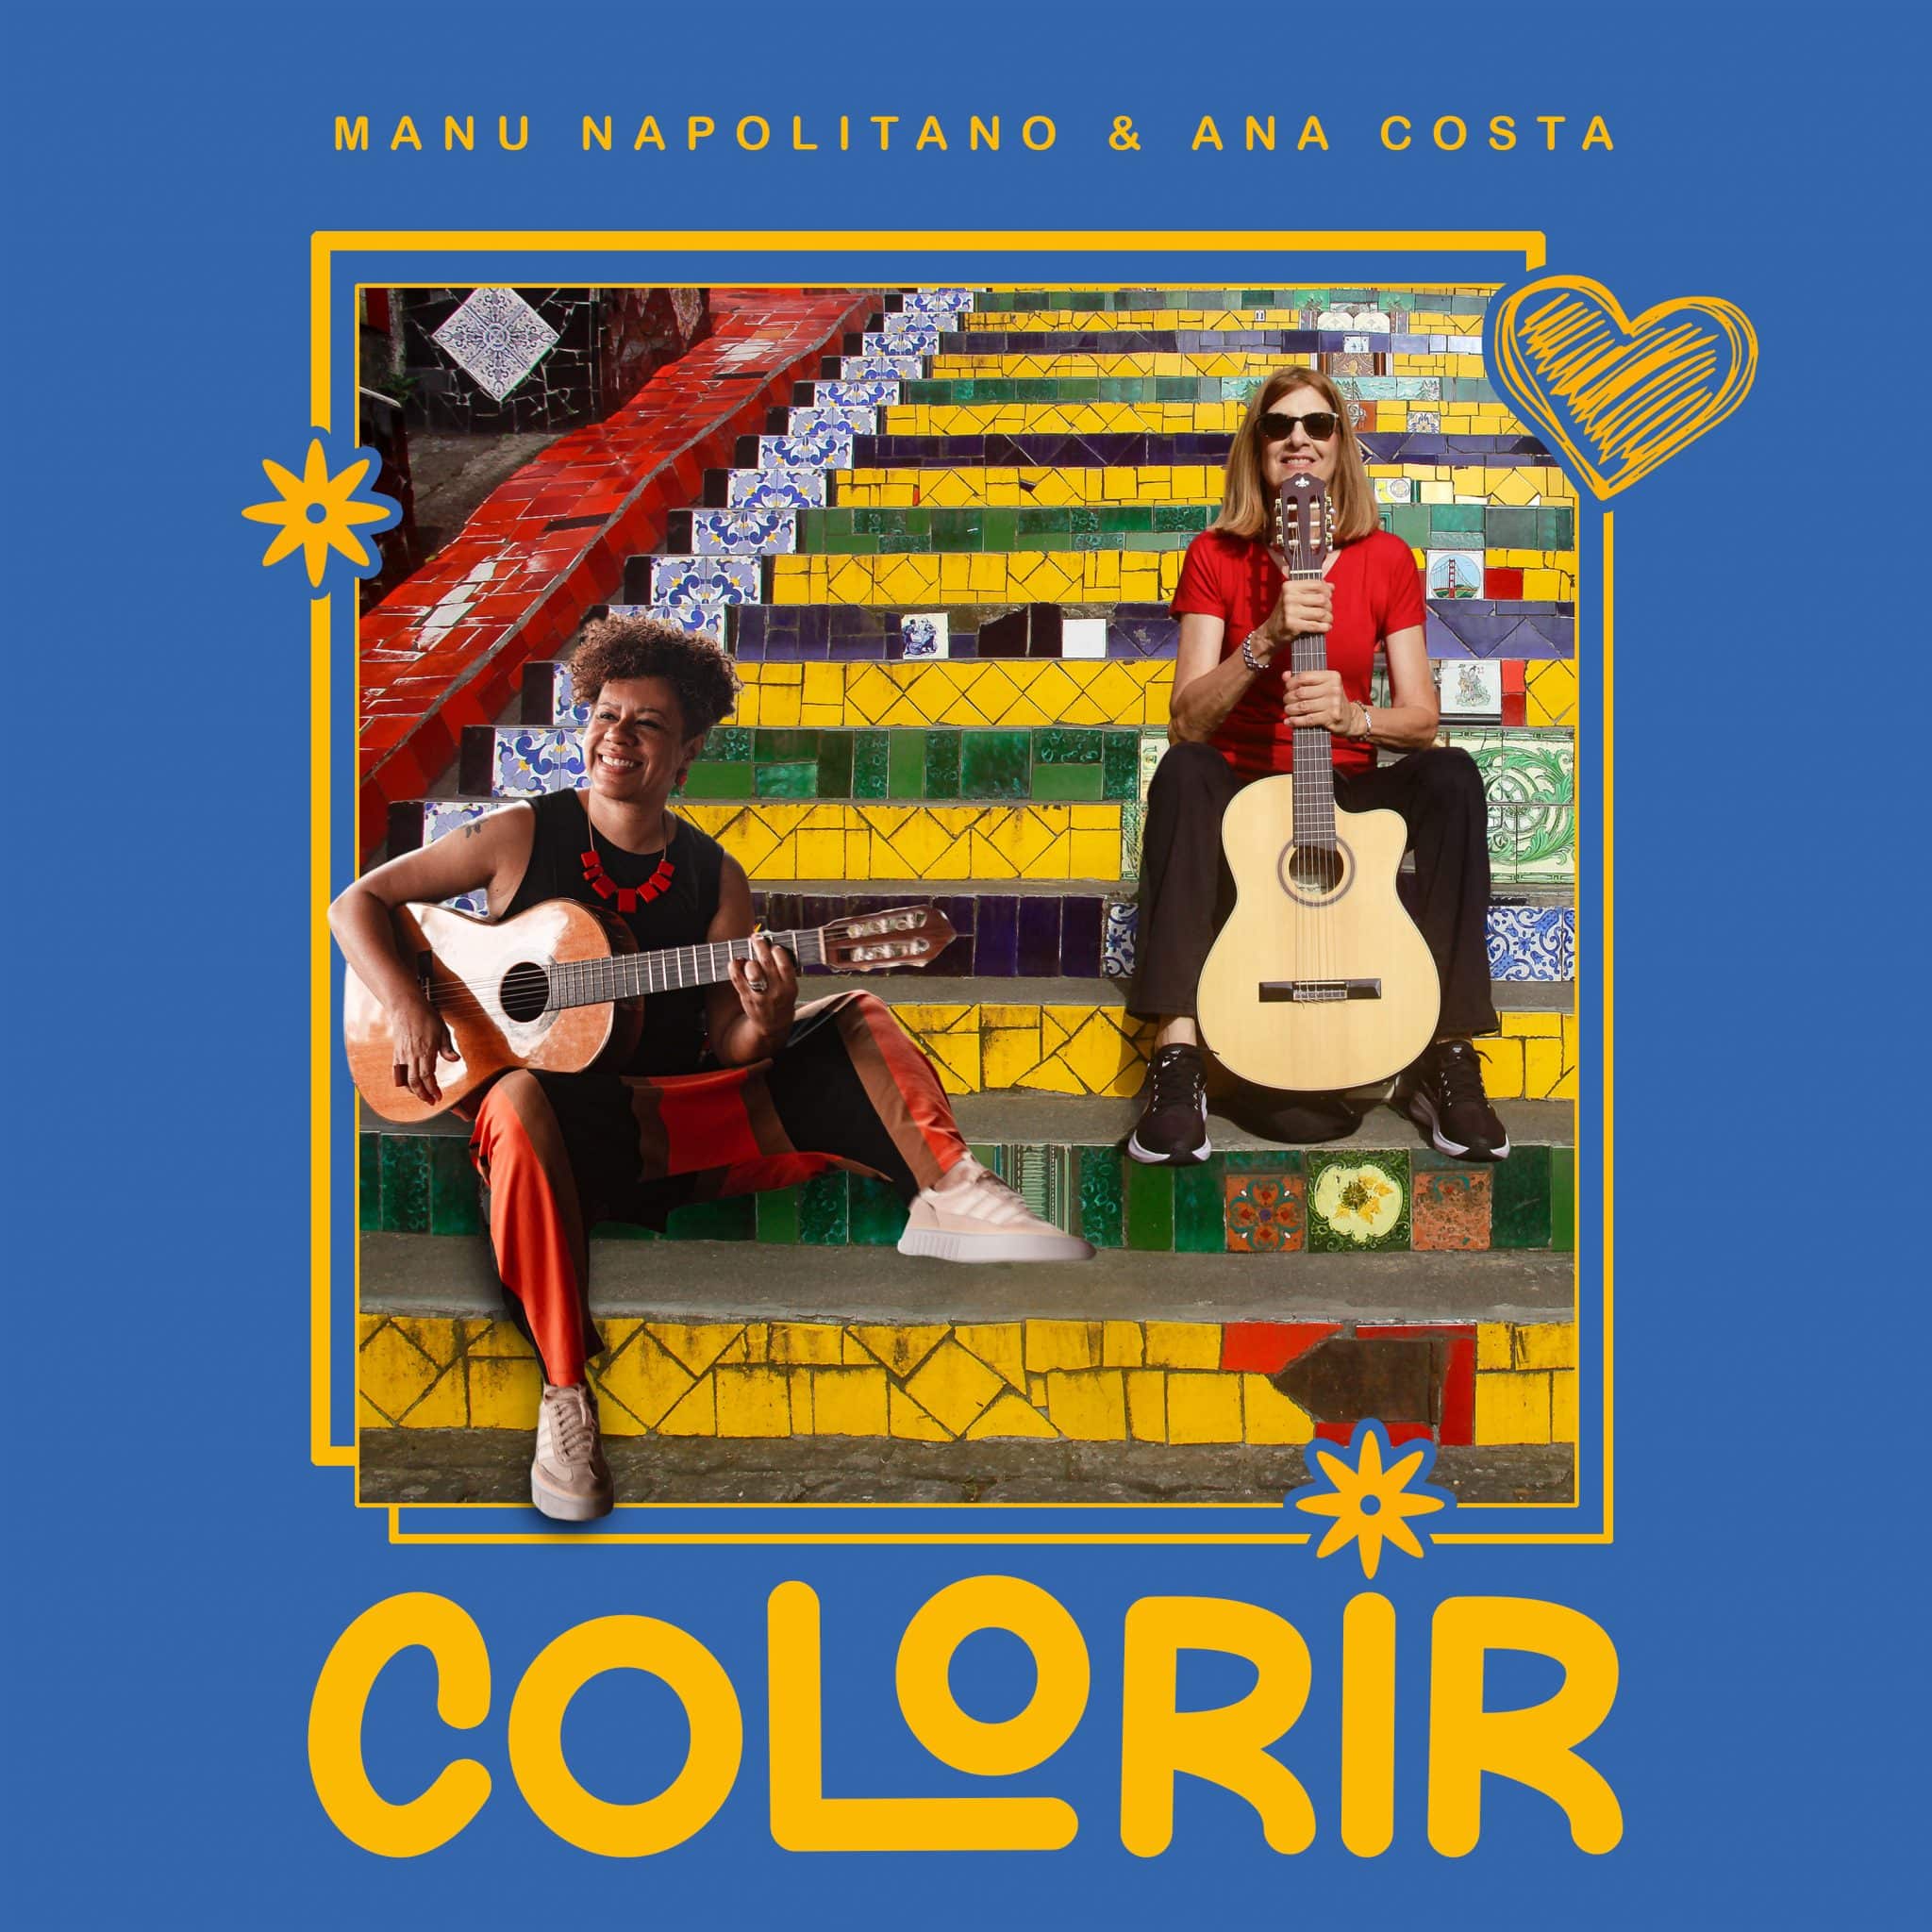 revistaprosaversoearte.com - Ponte entre Brasil e Europa através da música: Manu Napolitano e Ana Costa lançam o EP 'Colorir'